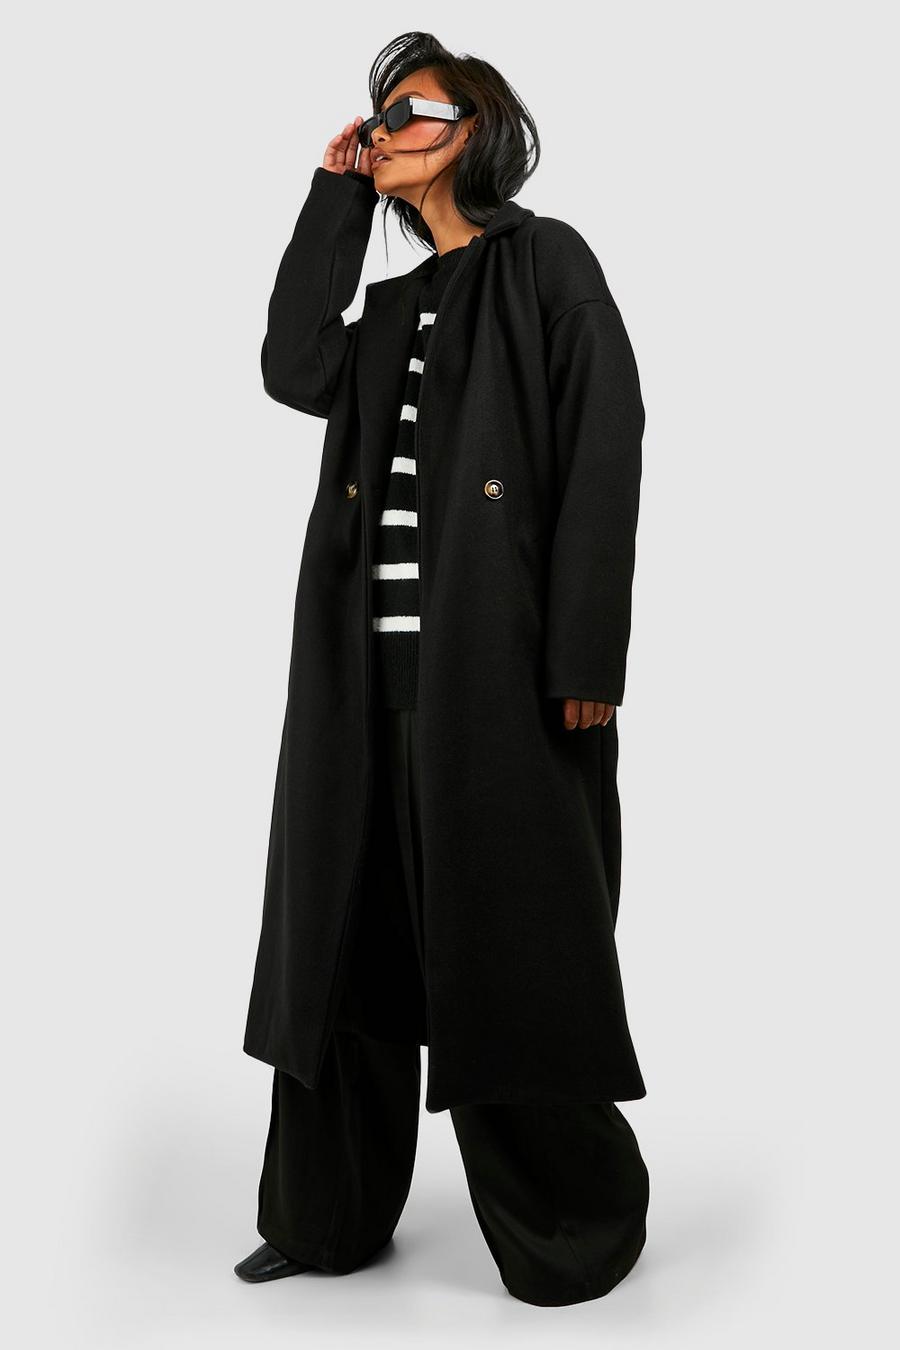 Zweireihiger Mantel in Wolloptik mit Gürtel, Black